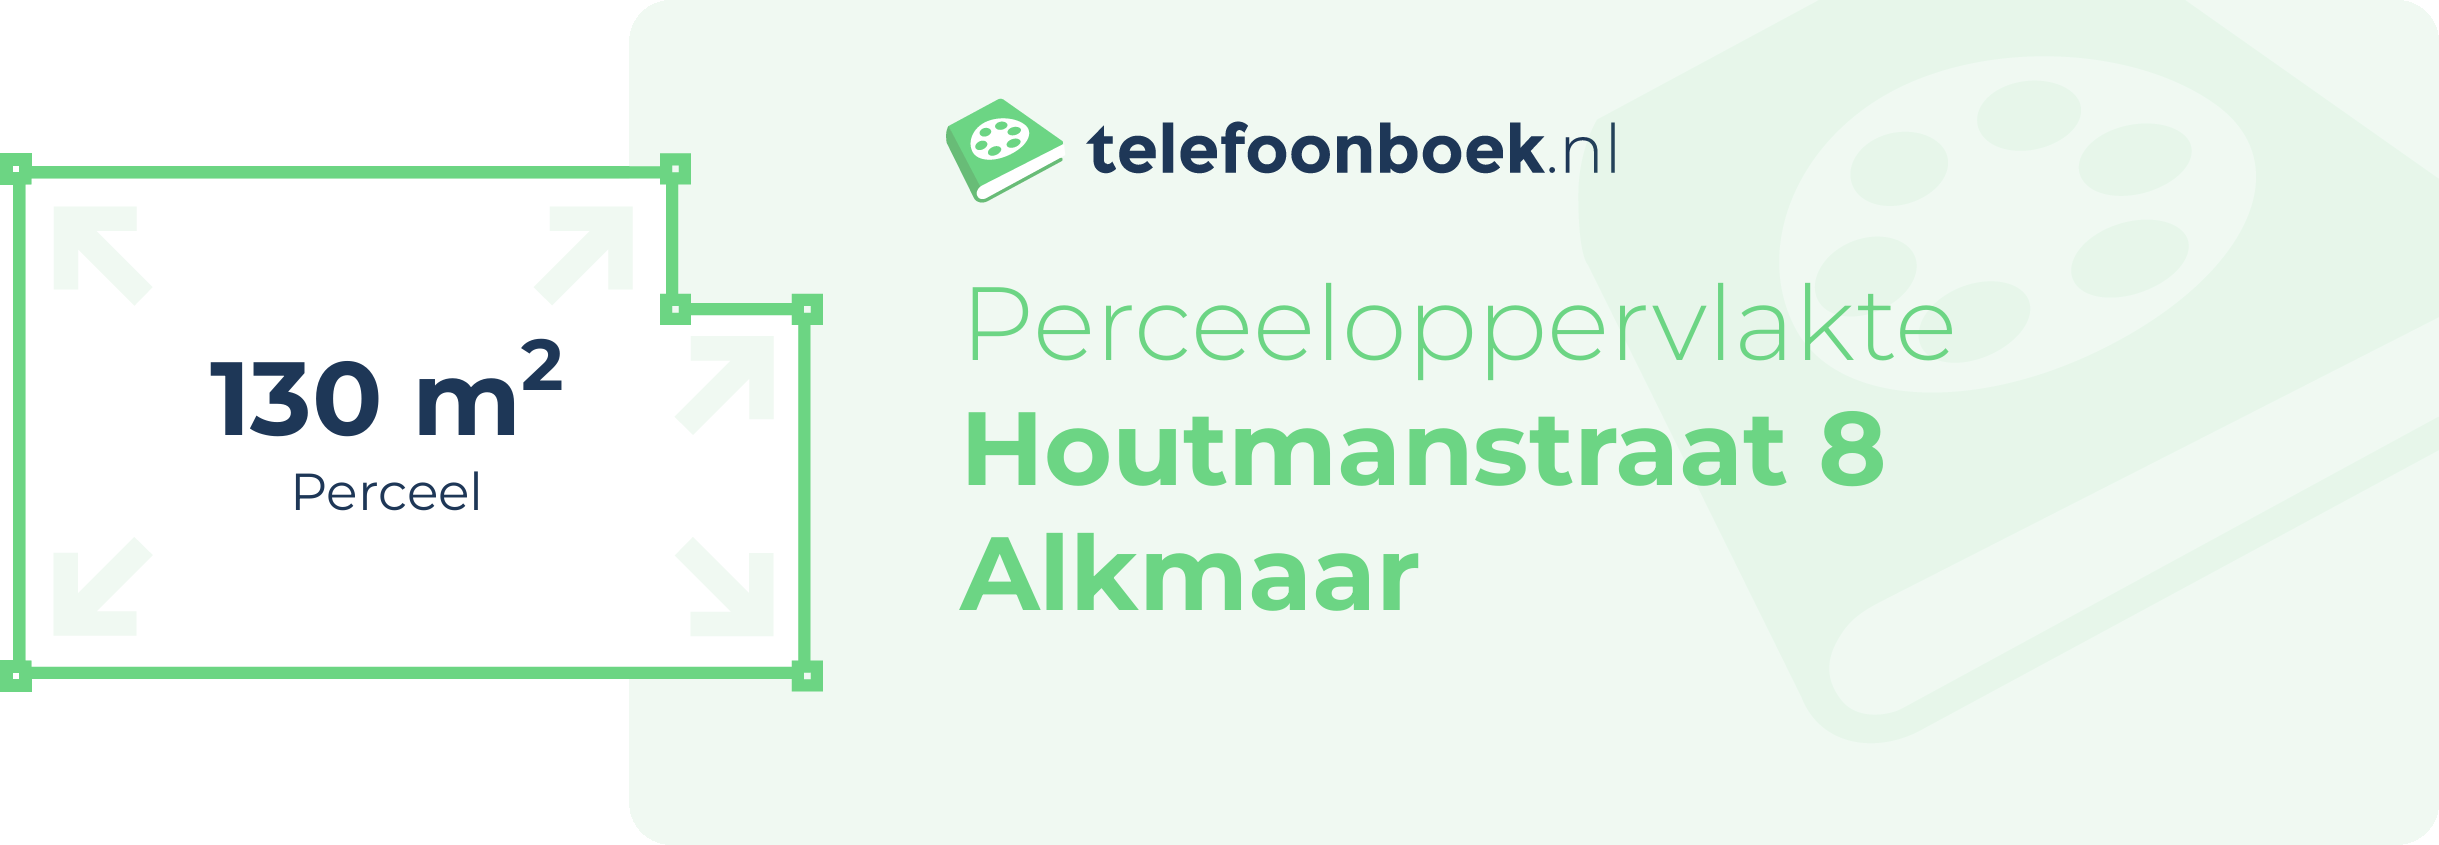 Perceeloppervlakte Houtmanstraat 8 Alkmaar